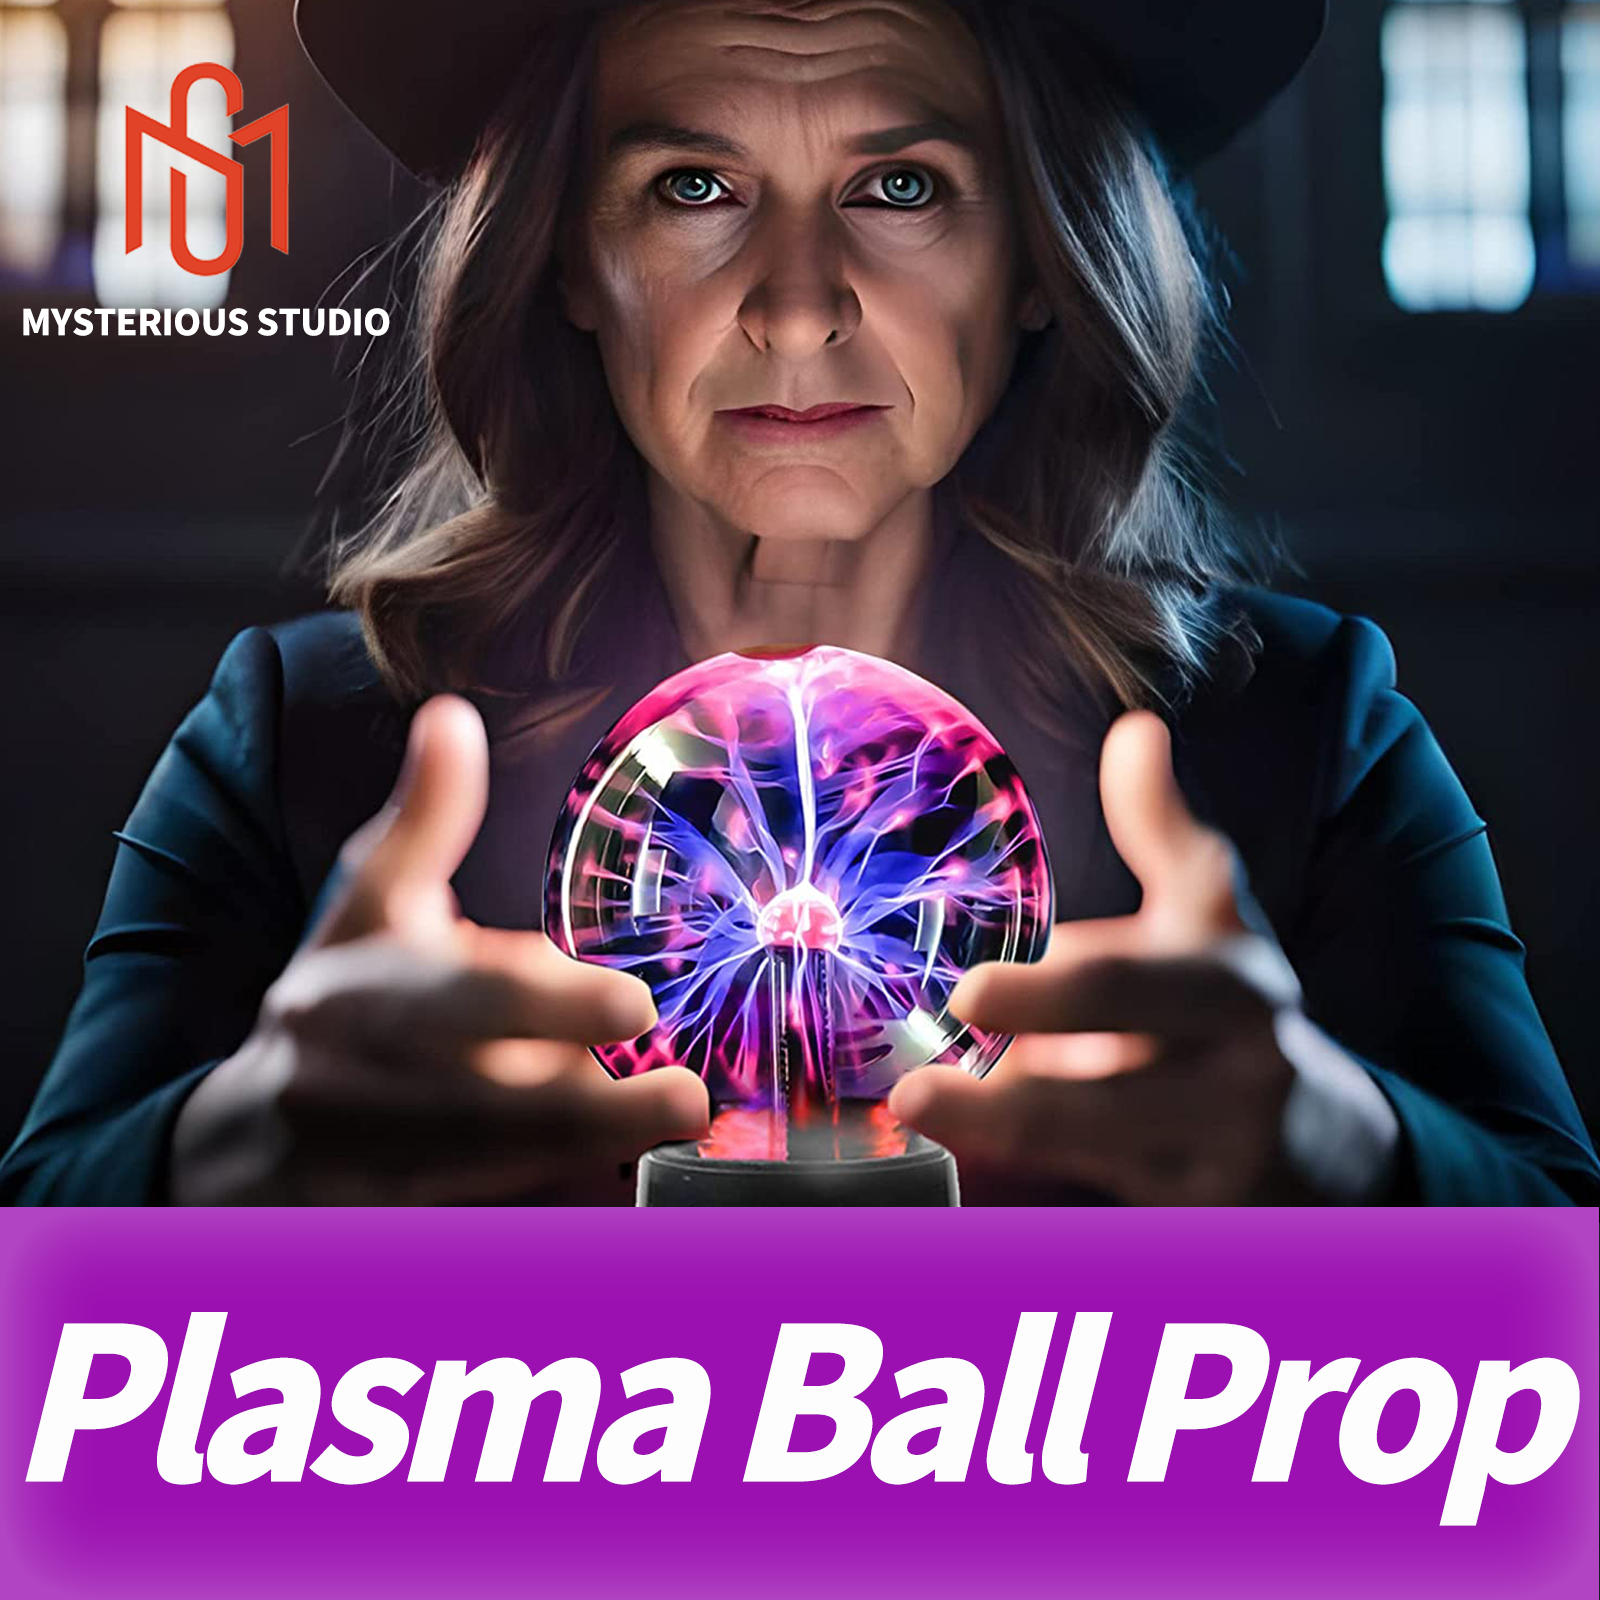 Mysterious Studio Secret Room Escape Game -mechanisme Props Electronic Puzzle Plasma Ball Static Luminous Touch